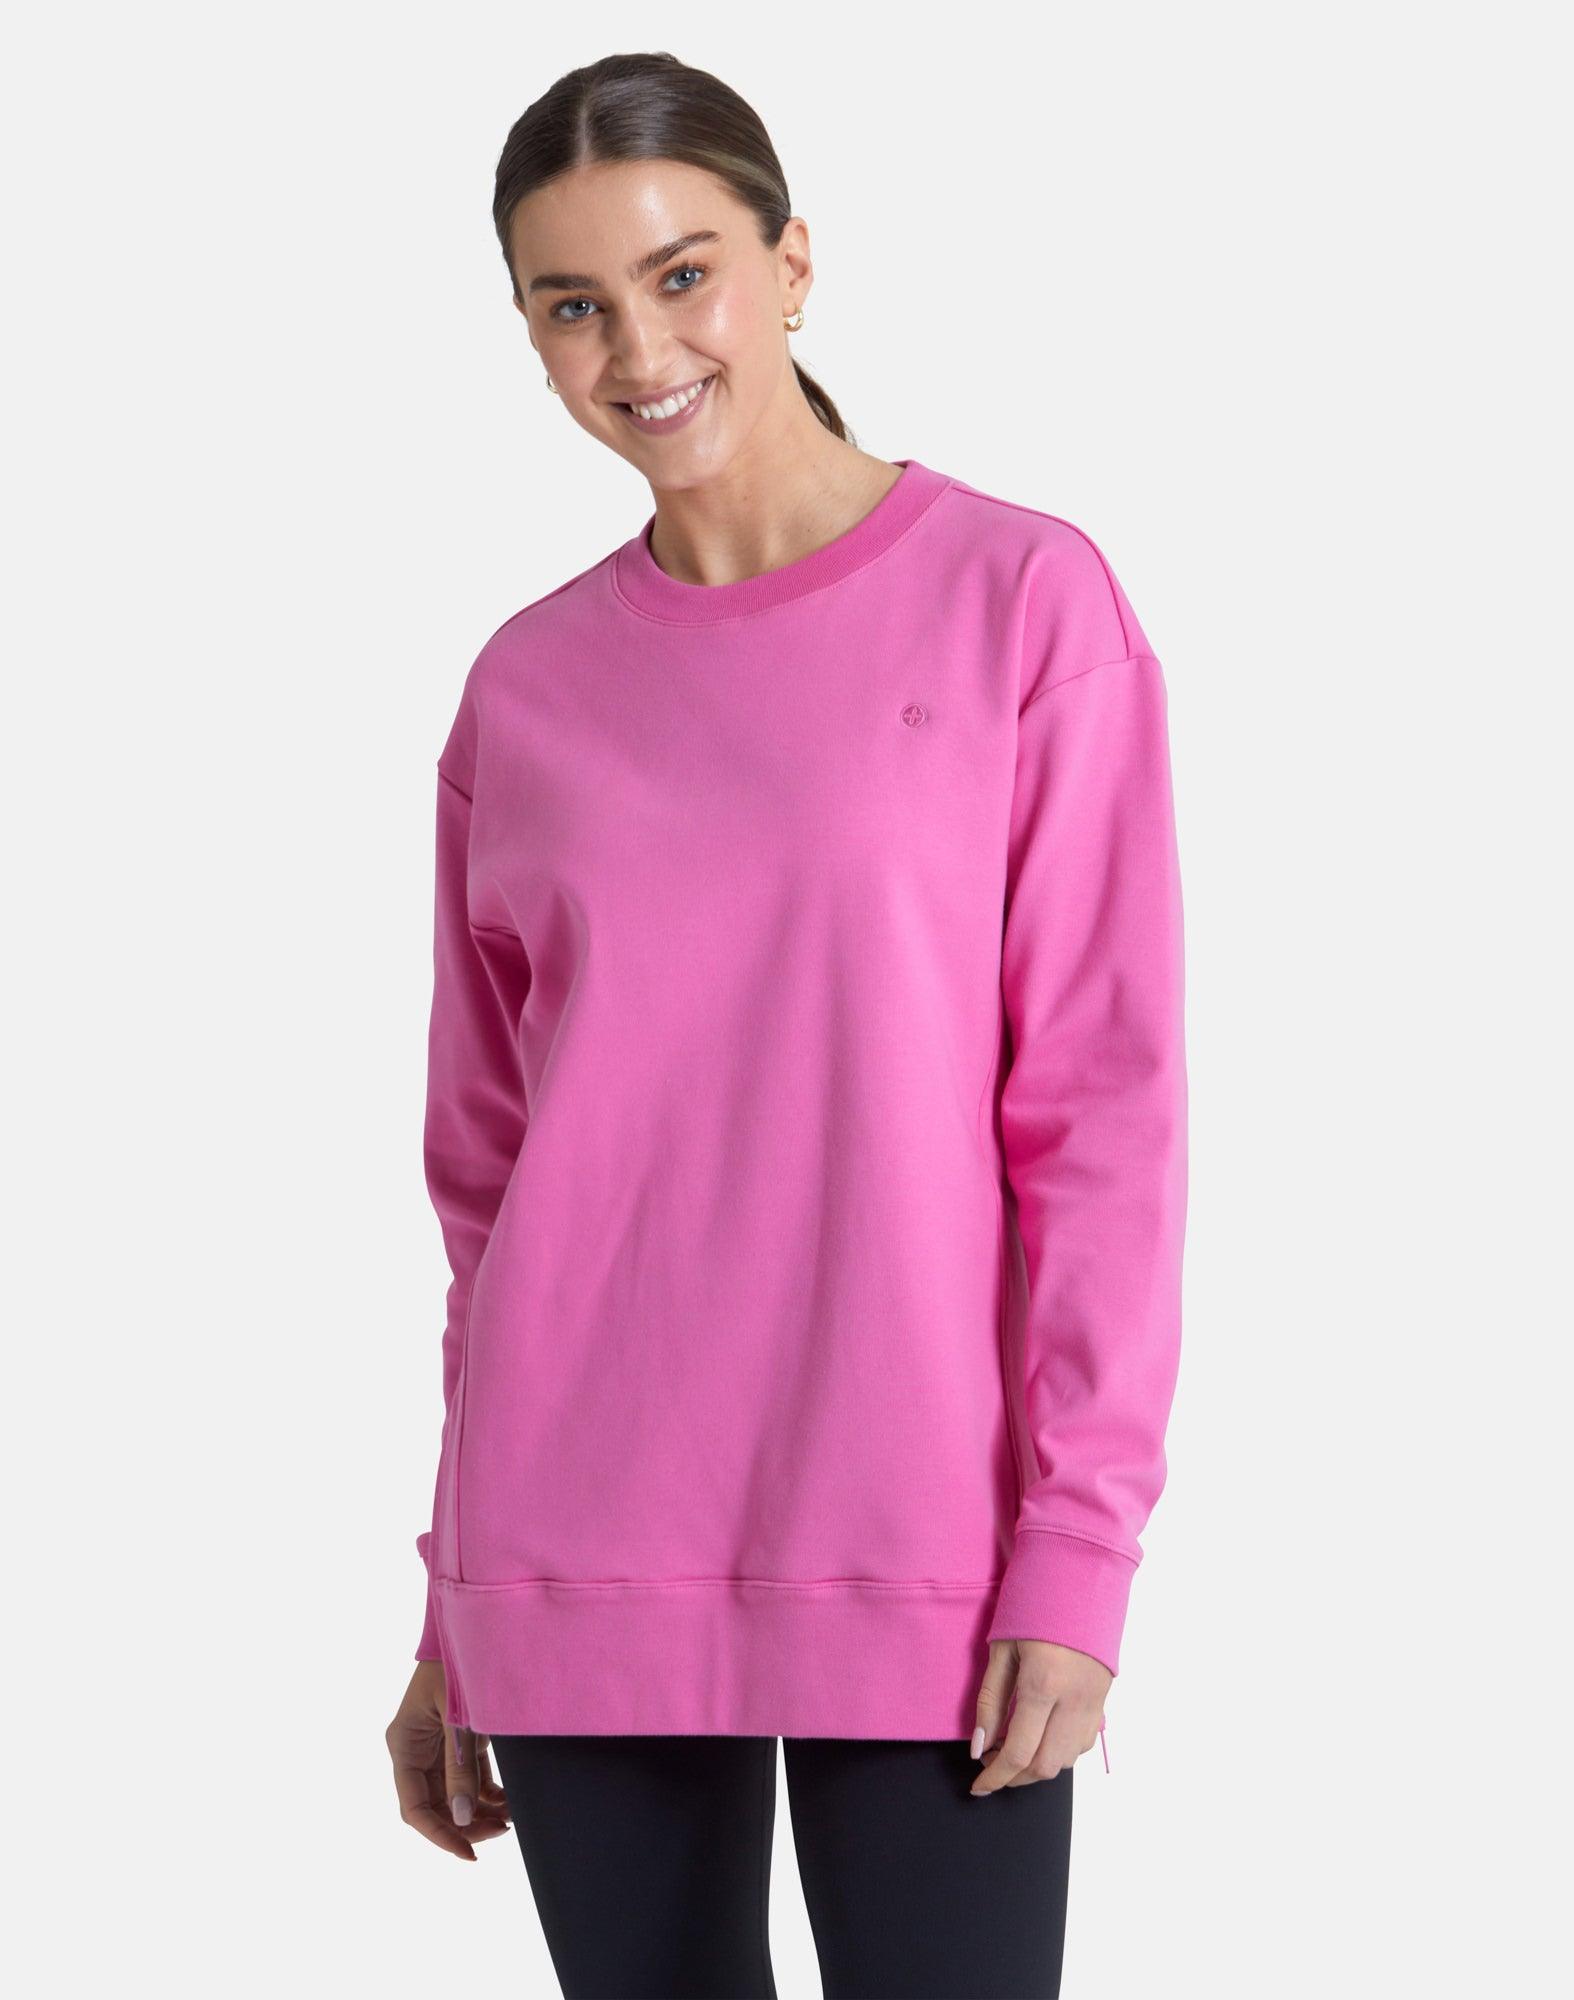 Essential Longline Crew in Empower Pink - Sweatshirts - Gym+Coffee